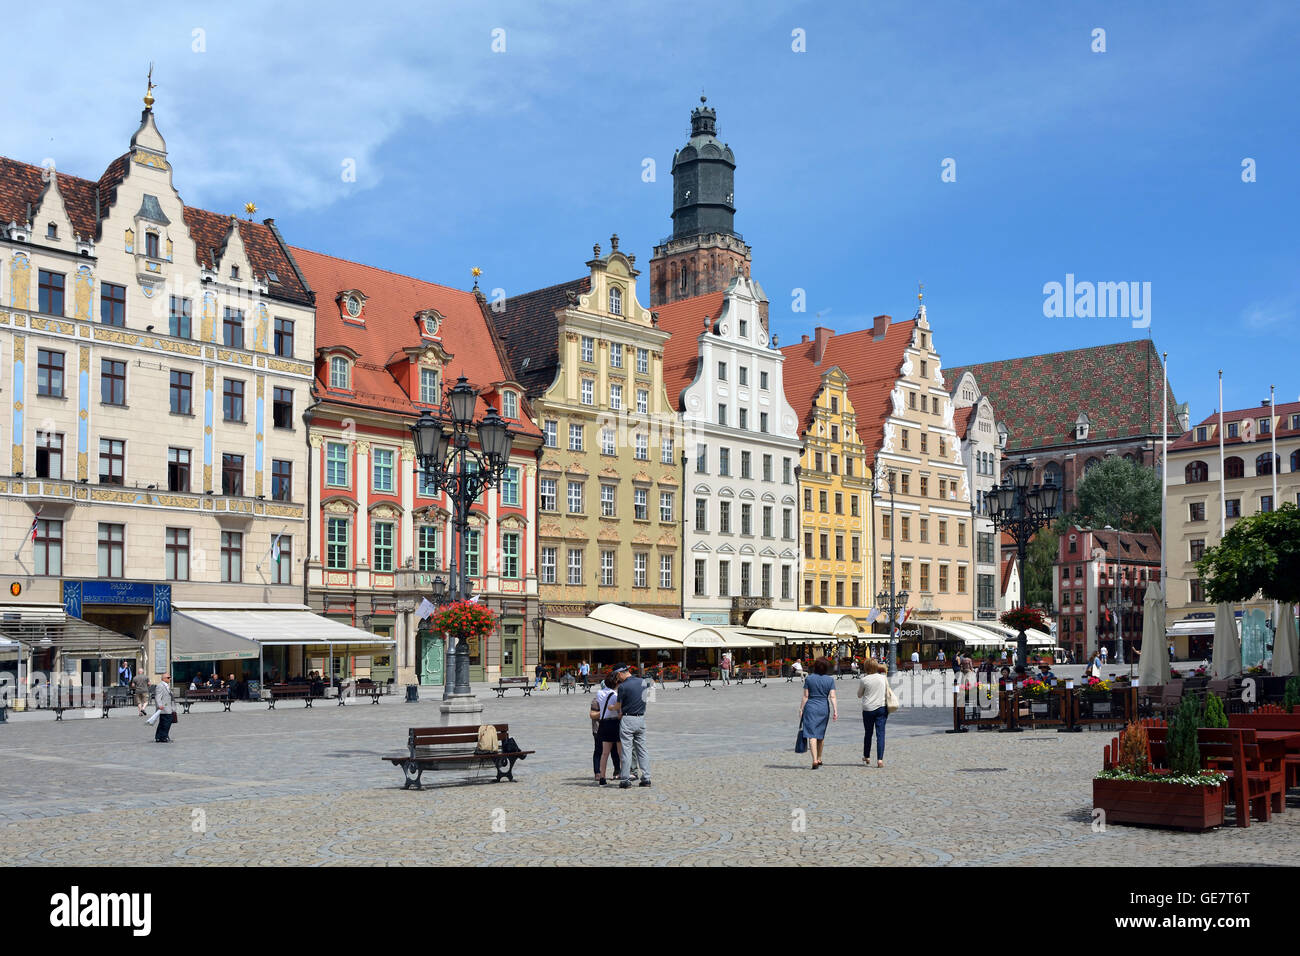 Marktplatz in der Altstadt von Breslau - Polen. Stockfoto